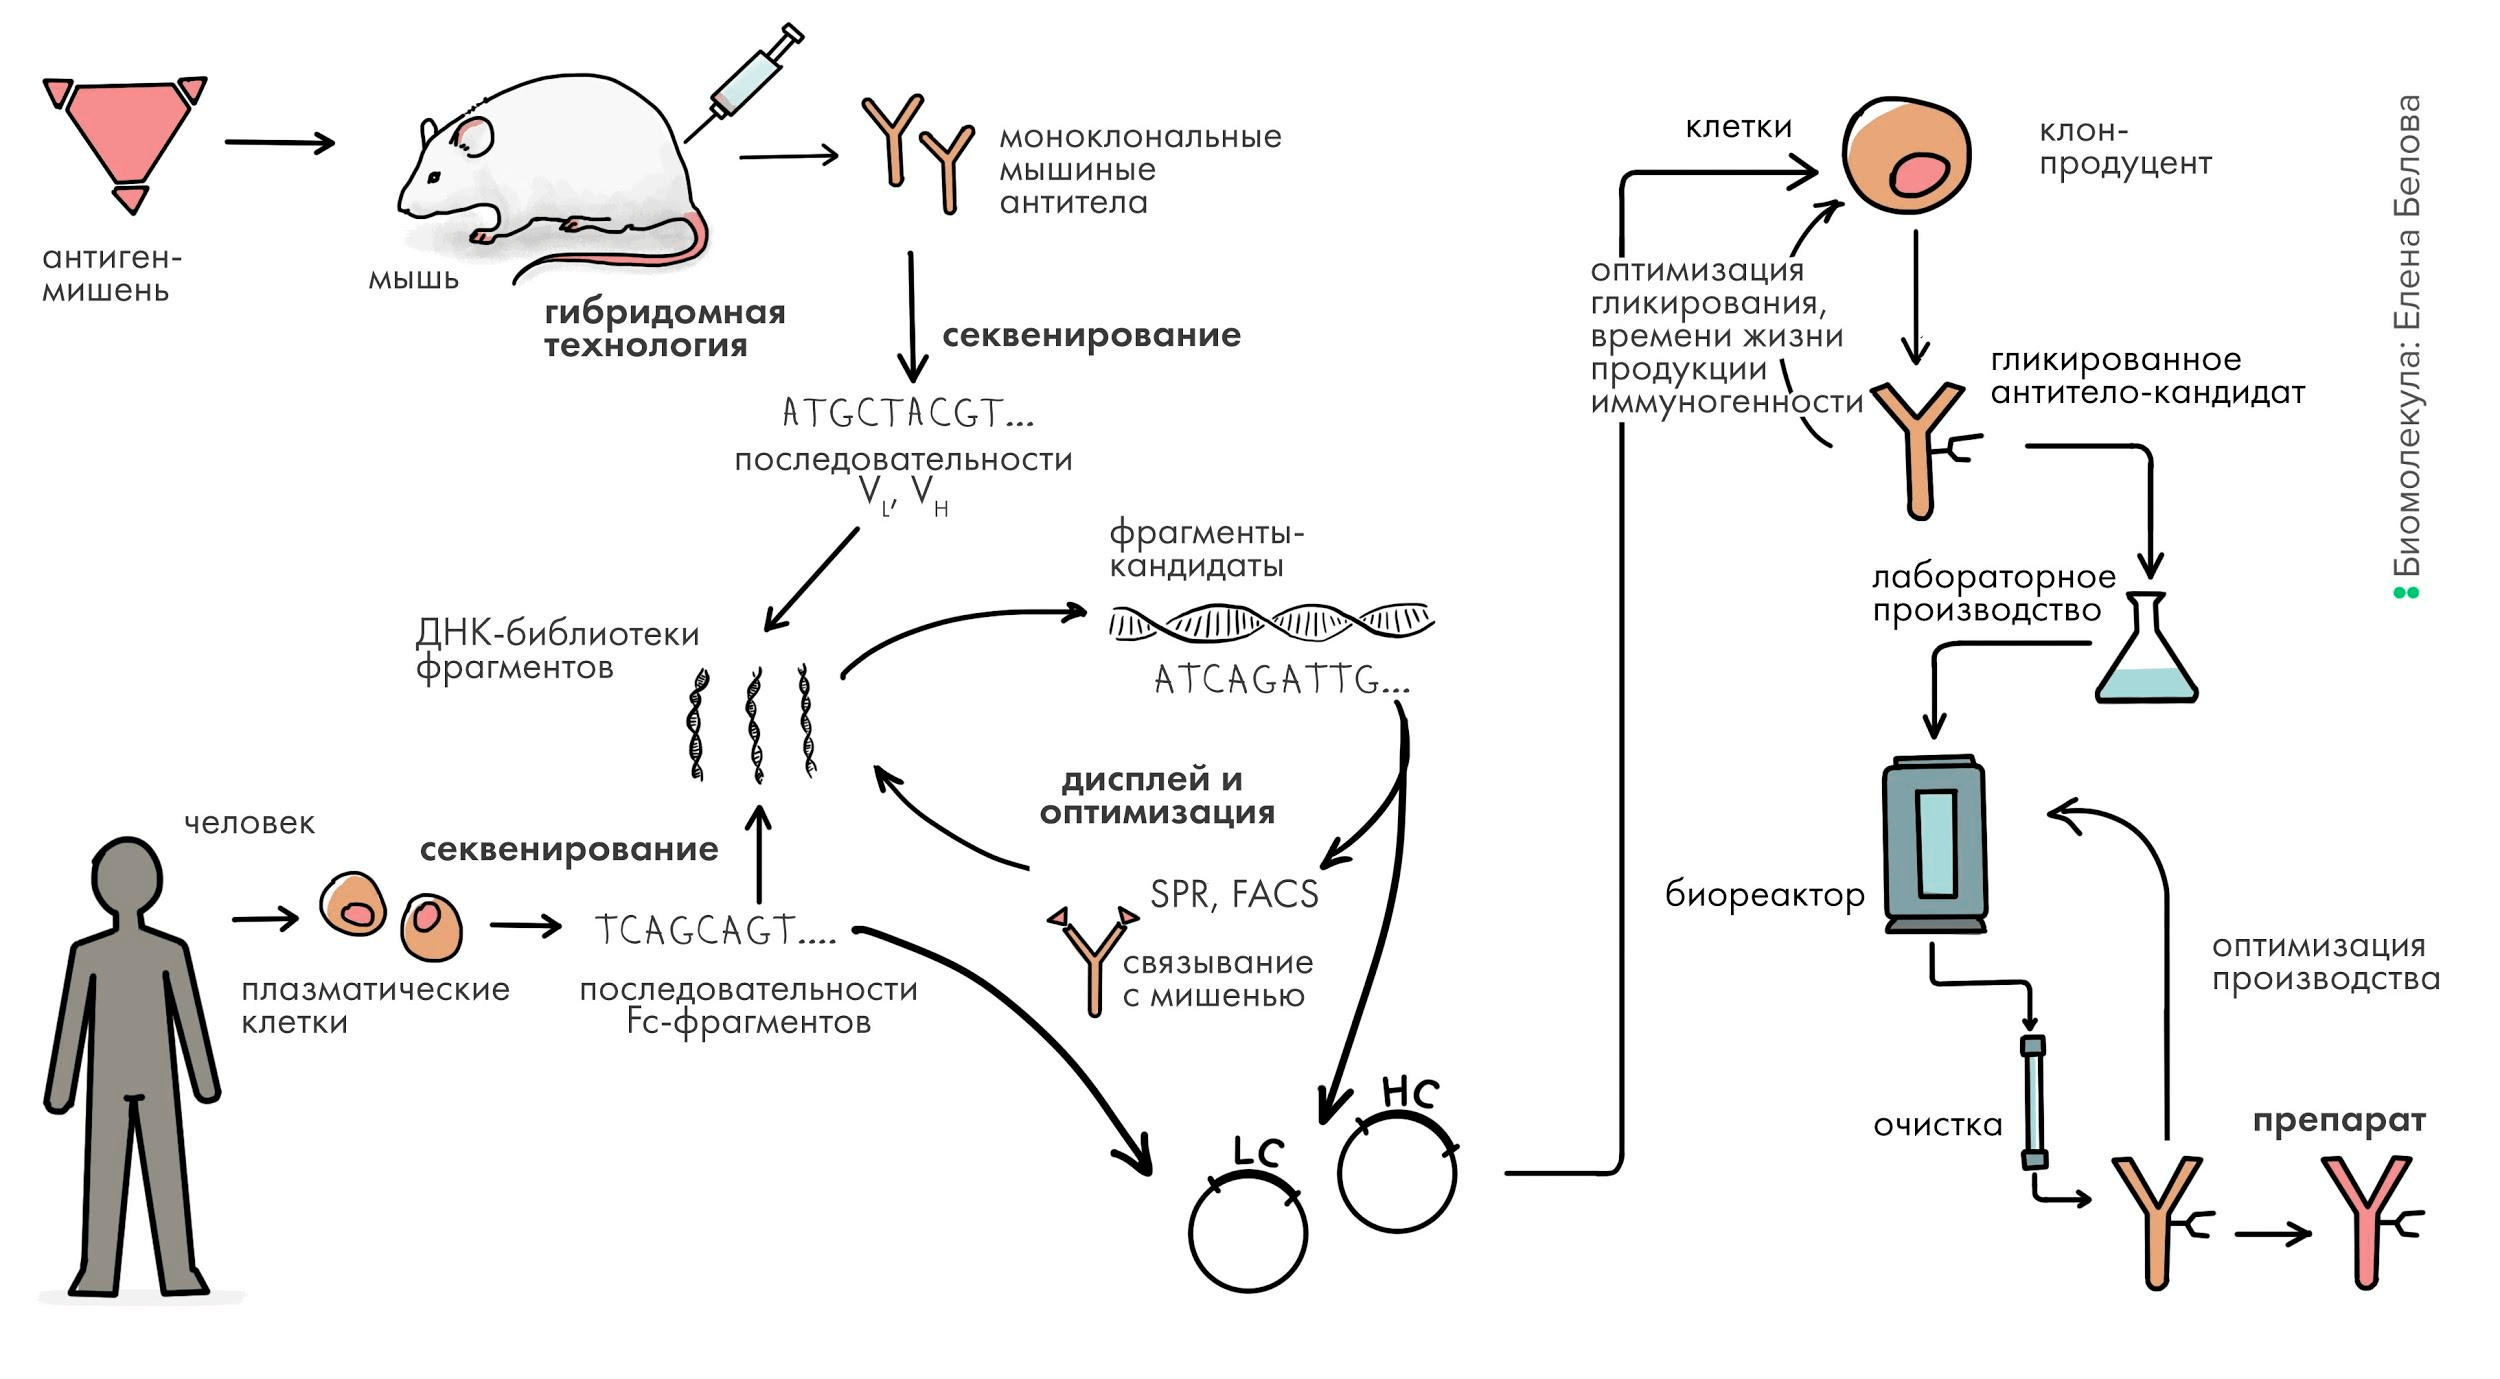 Общая схема разработки антитела